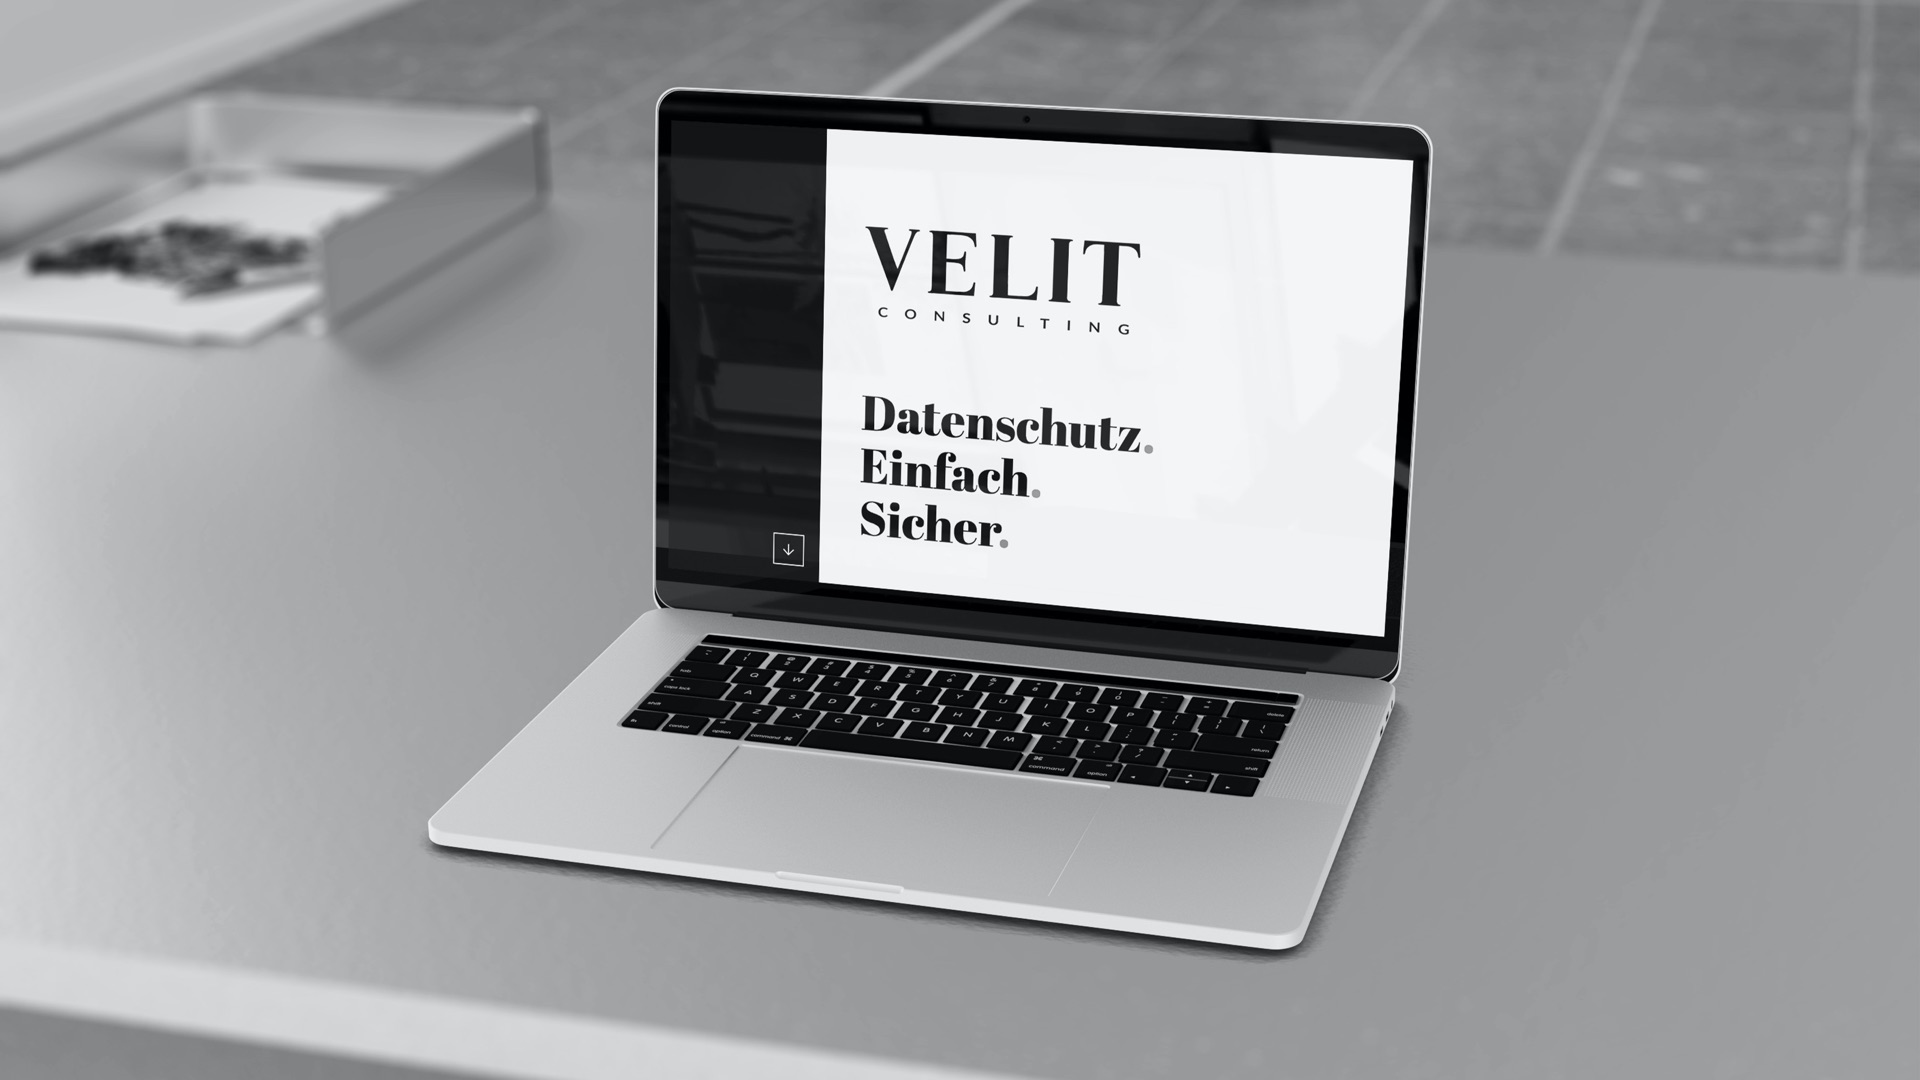 Neuer Look für die VELIT Consulting